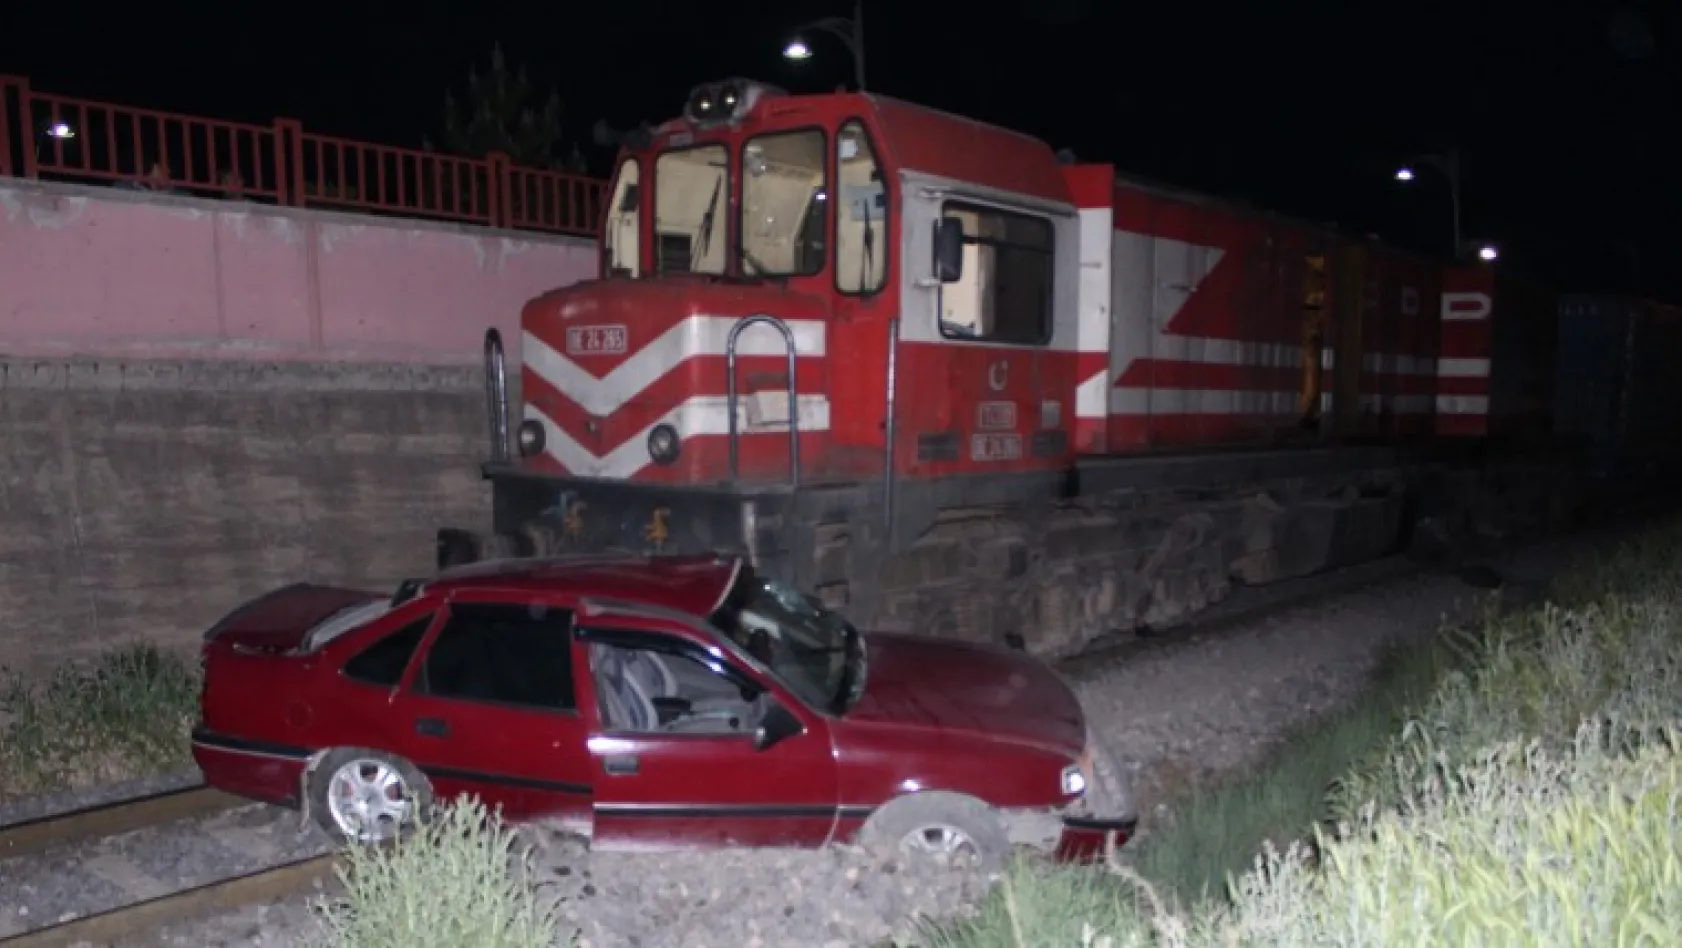 Yük treni otomobile çarptı: 1 yaralı